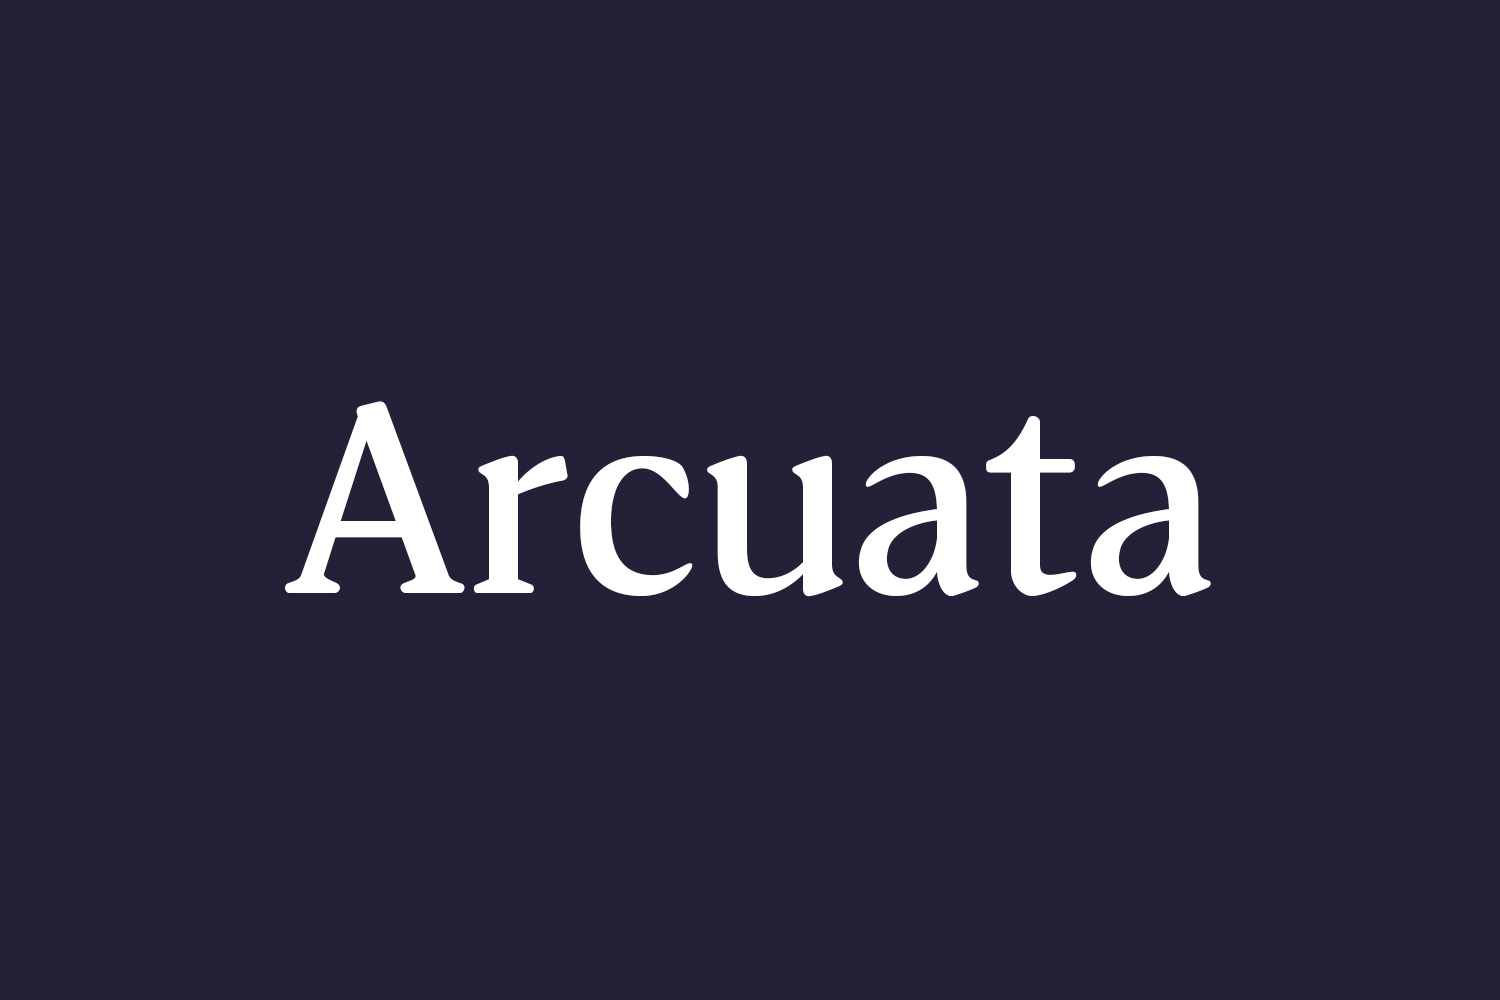 Arcuata Free Font